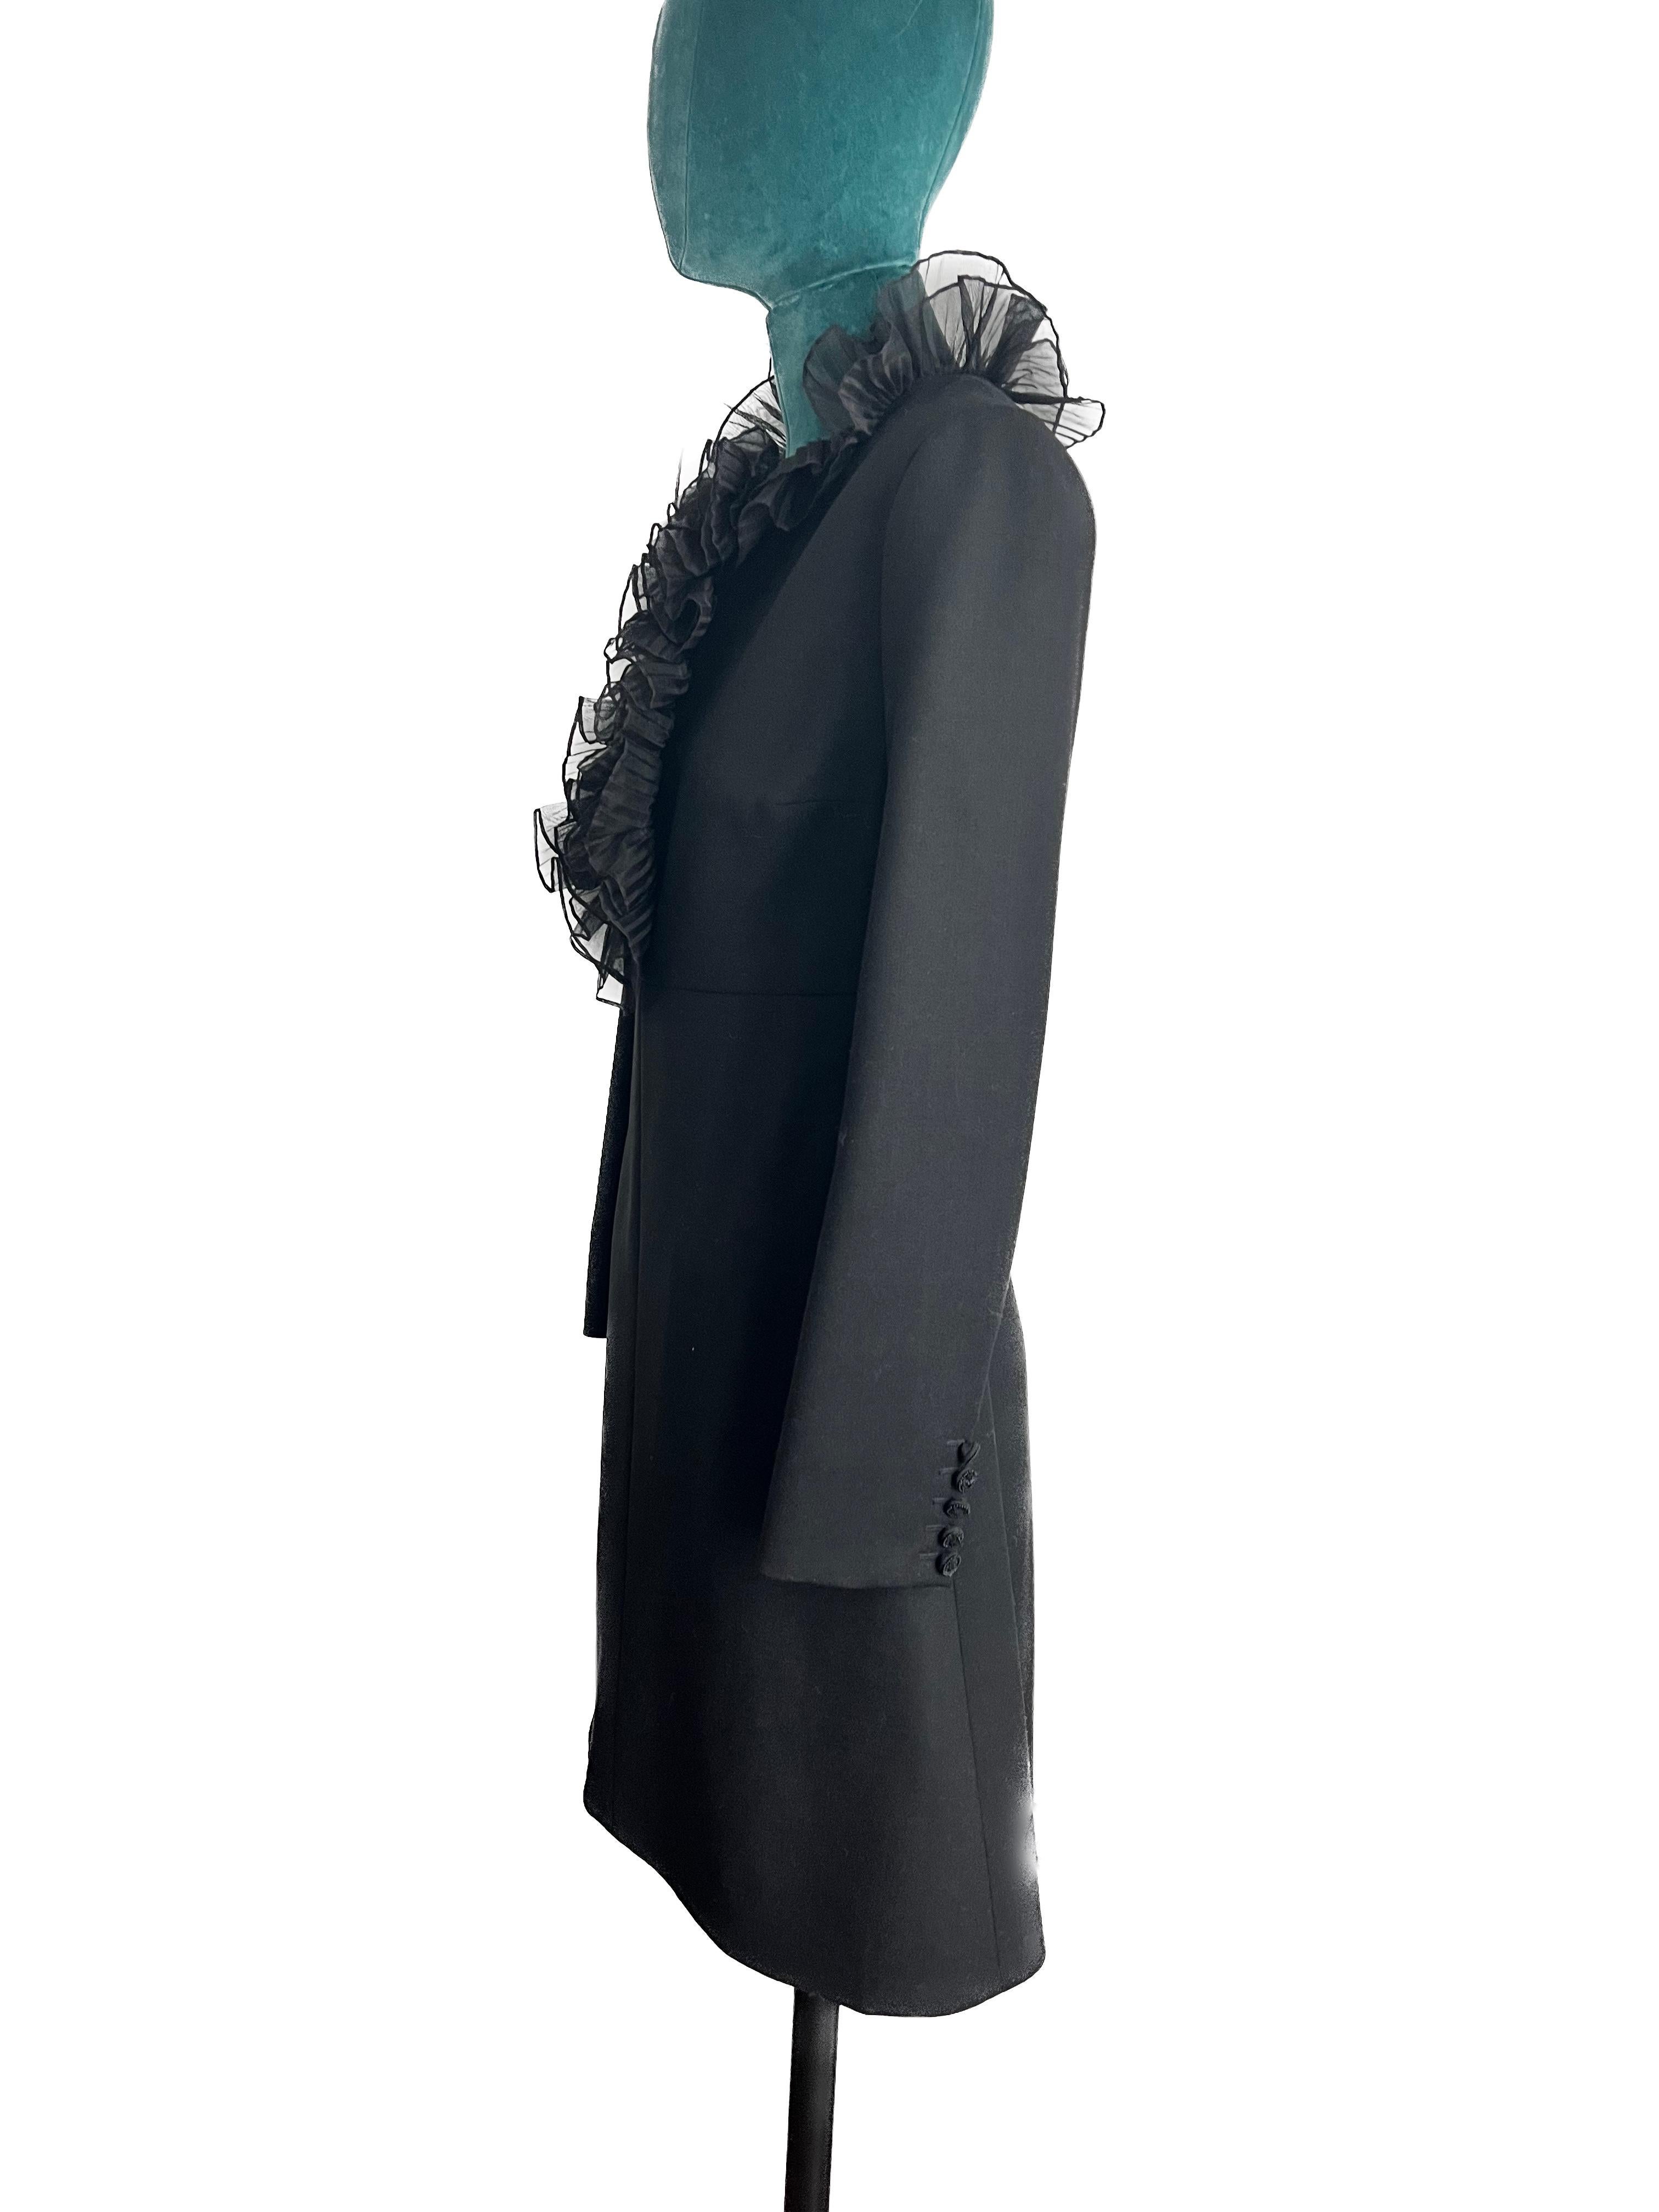 Gönnen Sie sich den Inbegriff von Pariser Chic mit dem Yves Saint Laurent (YSL) Wool Short Dress, einem raffinierten und verspielten Ensemble, das mühelos zeitlose Eleganz mit zeitgenössischem Flair verbindet. Dieses mit viel Liebe zum Detail